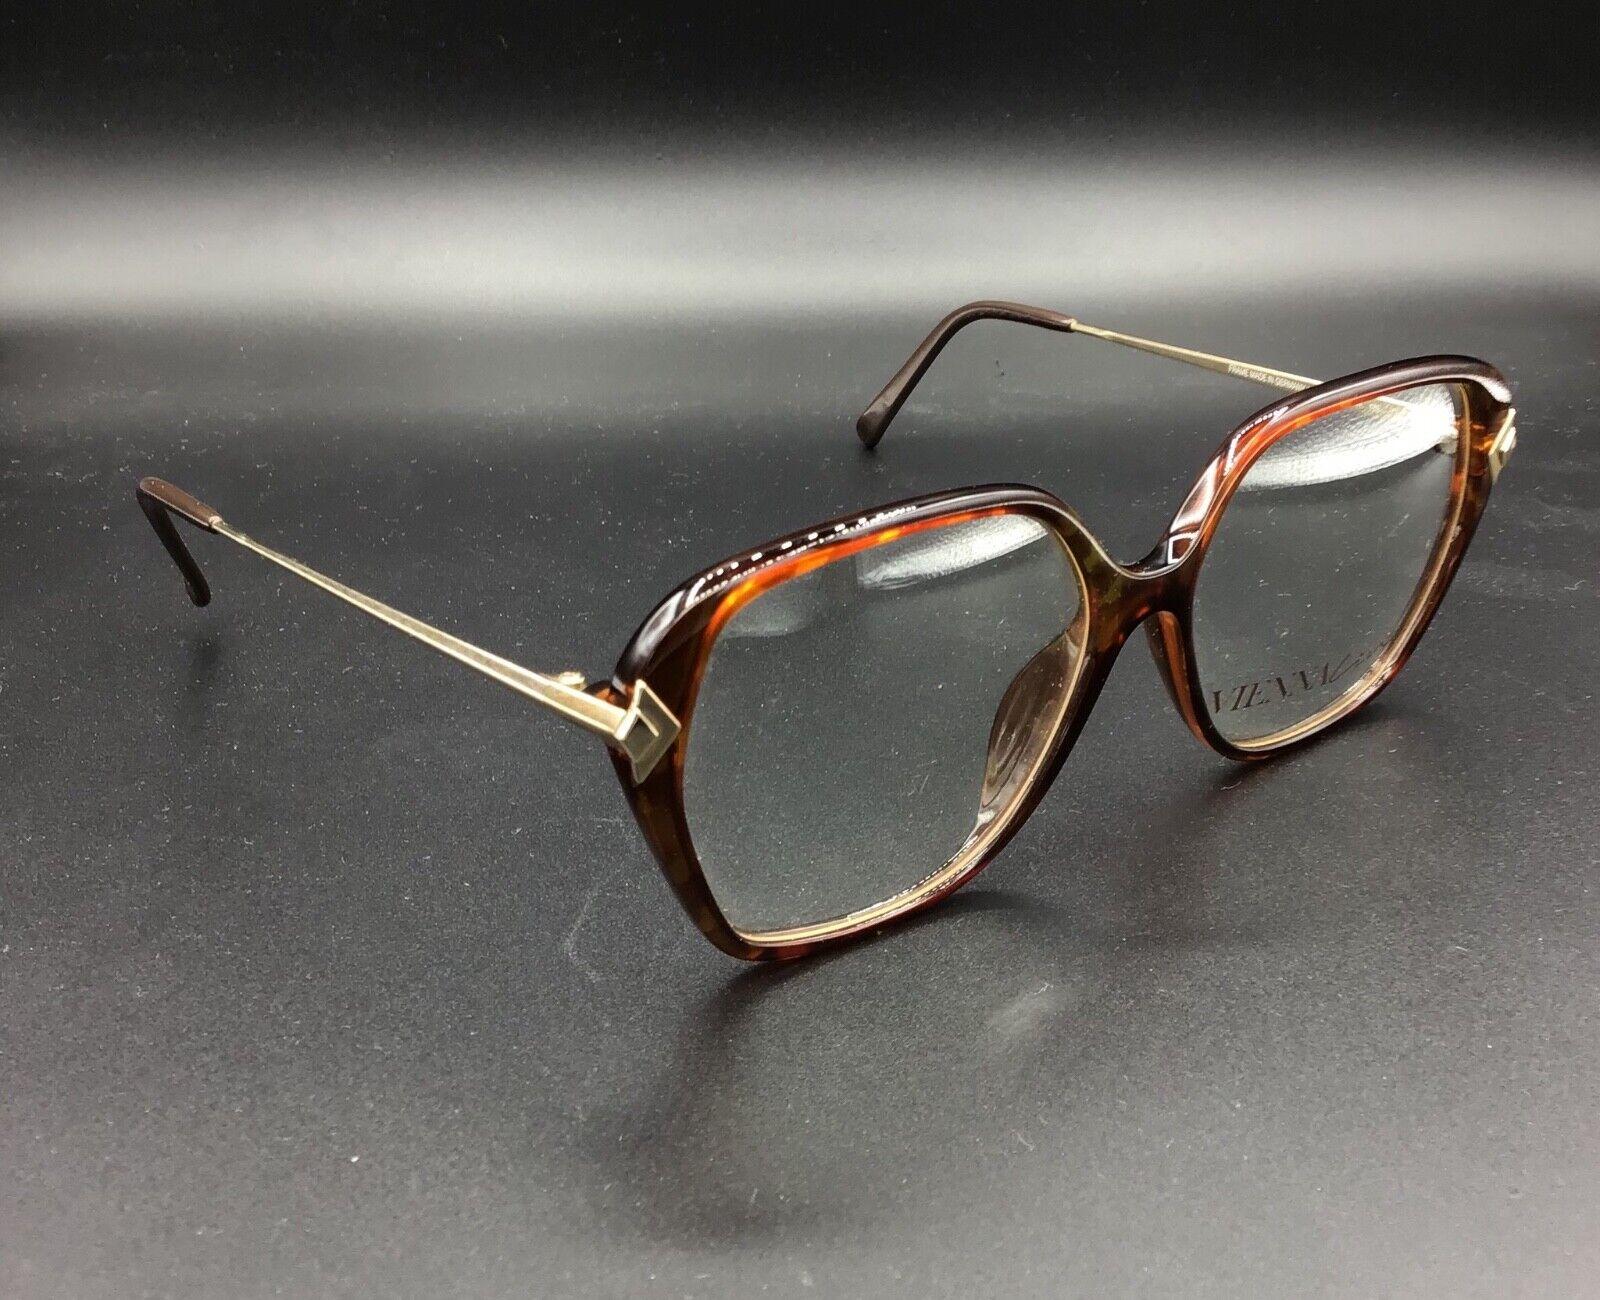 ViennaLine occhiale vintage Eyewear frame Made in Germany model 1550 10 Brillen